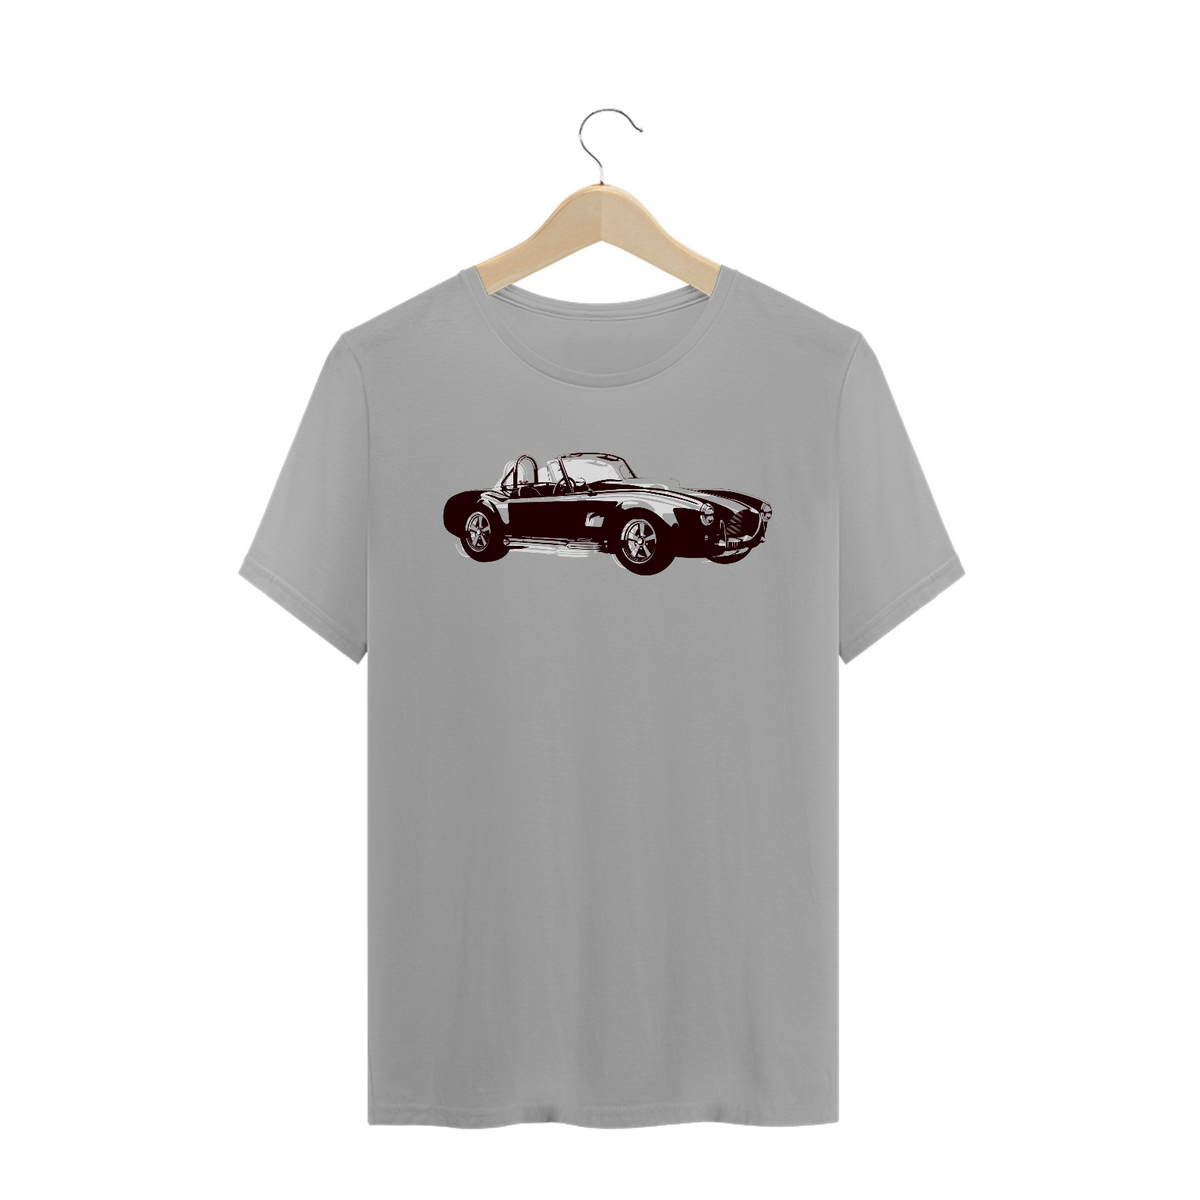 Nome do produto: Camiseta Carro de Luxo